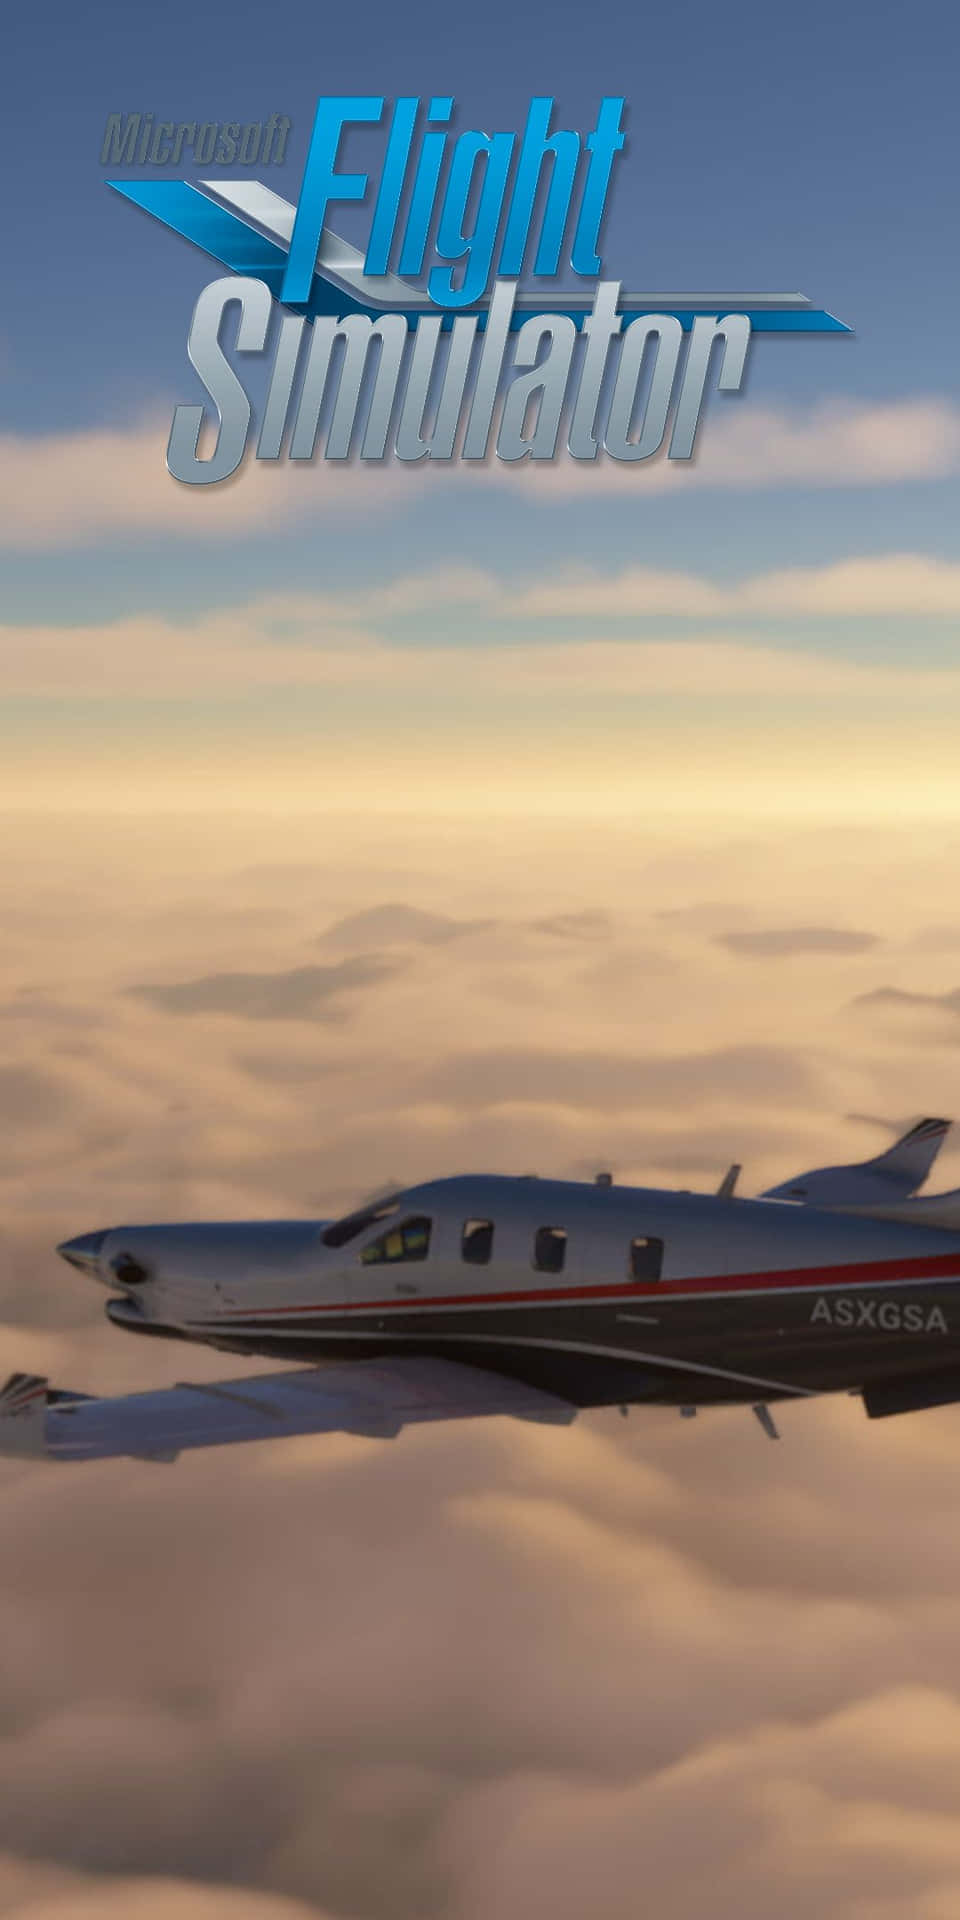 Imagenmicrosoft Flight Simulator: Llevando El Pixel 3 A Los Cielos